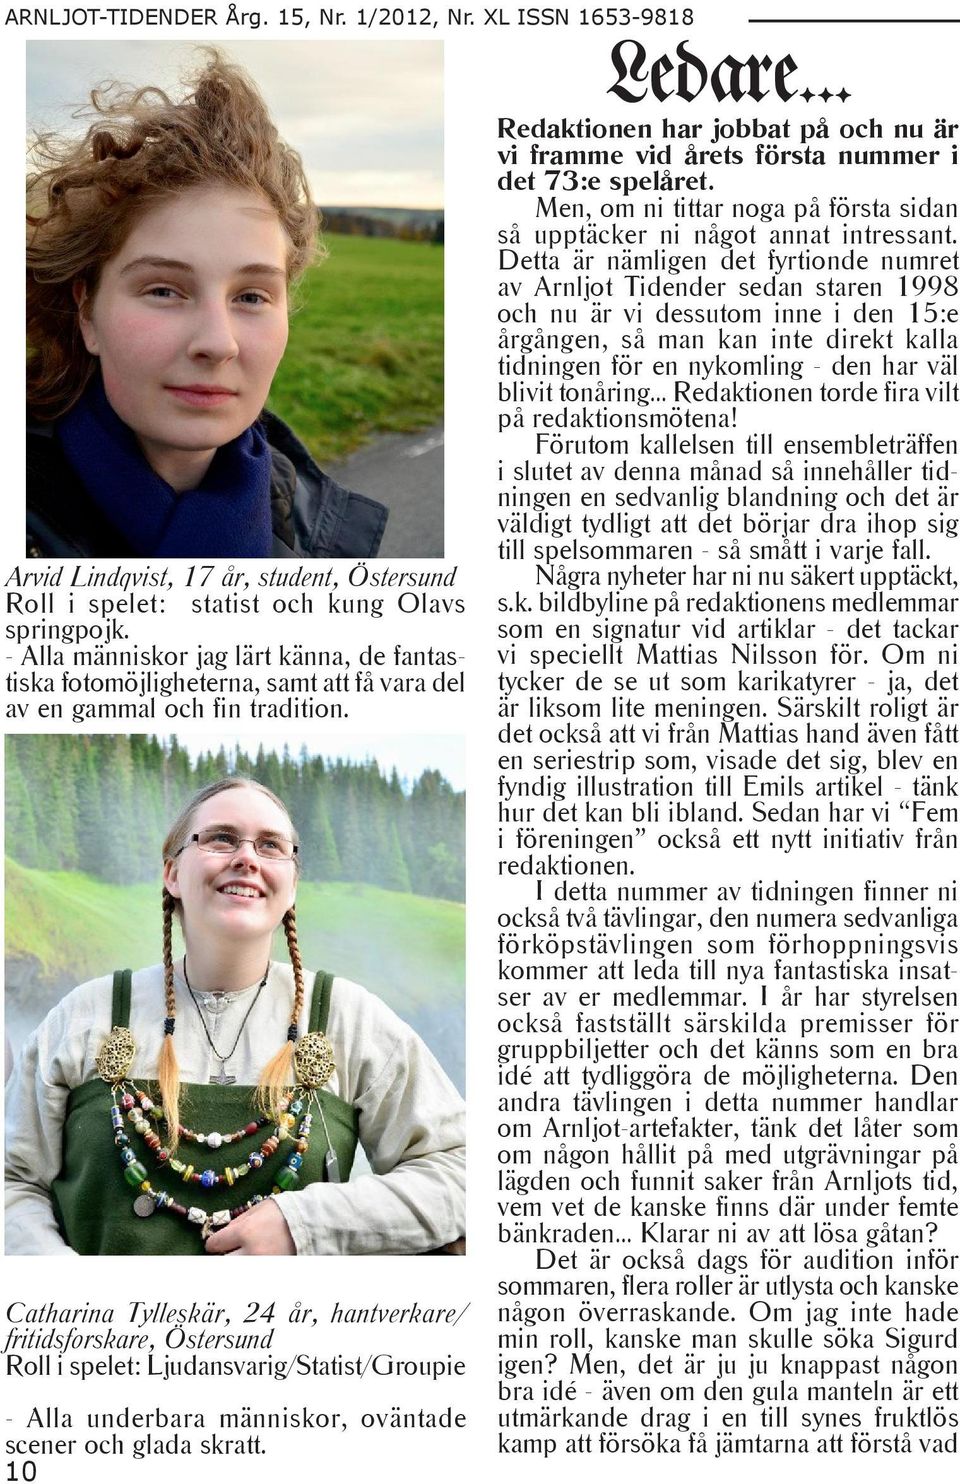 Catharina Tylleskär, 24 år, hantverkare/ fritidsforskare, Östersund Roll i spelet: Ljudansvarig/Statist/Groupie - Alla underbara människor, oväntade scener och glada skratt. 10 Ledare.